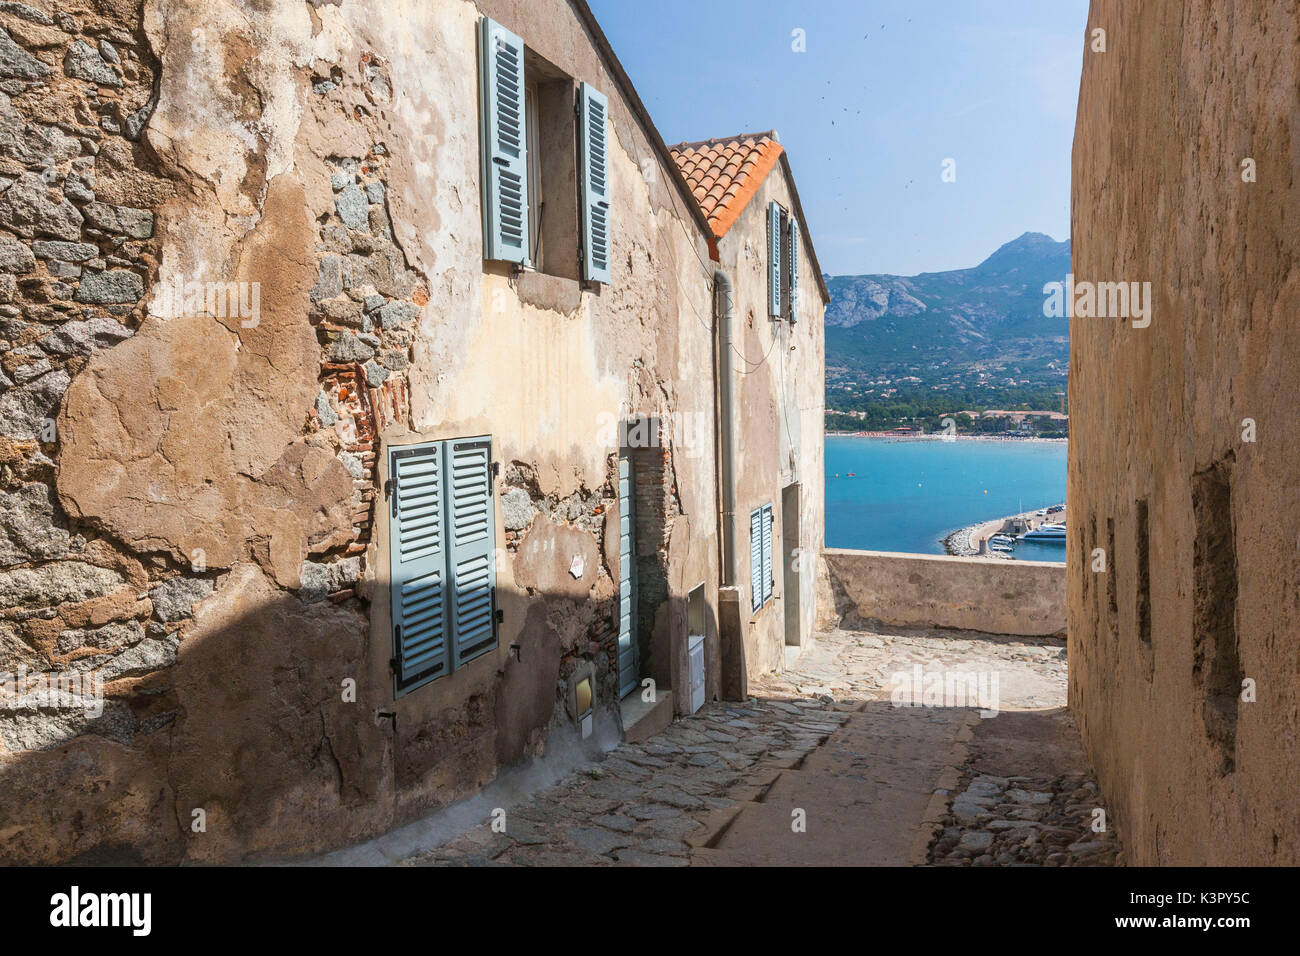 Bâtiments anciens dans les ruelles de l'ancienne citadelle surplombant la mer de Calvi Balagne Corse France Europe du nord-ouest Banque D'Images